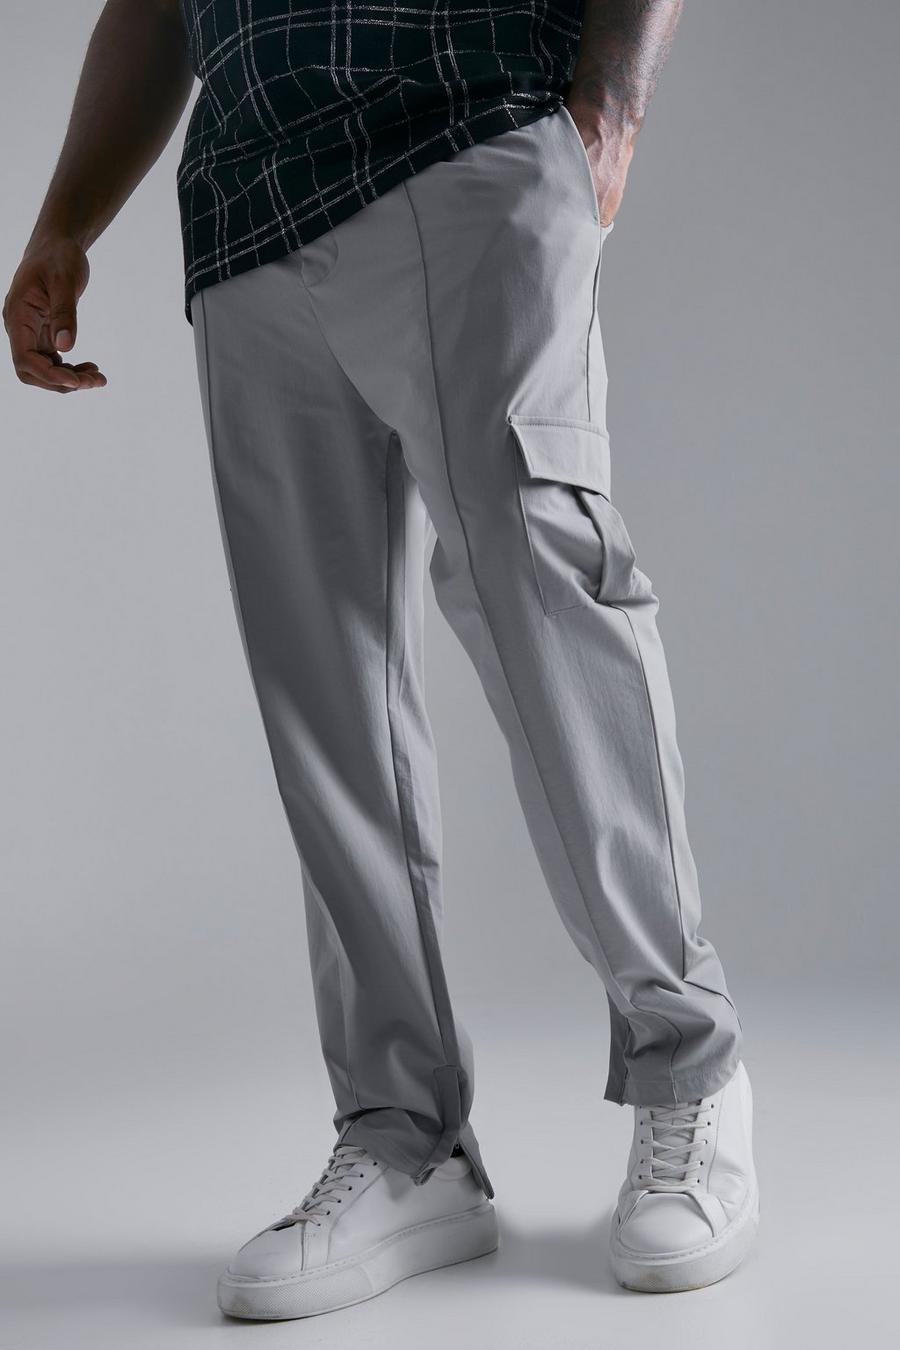 אפור gris מכנסי דגמ'ח בגזרה צרה נמתחים ל-4 כיוונים, מידות גדולות